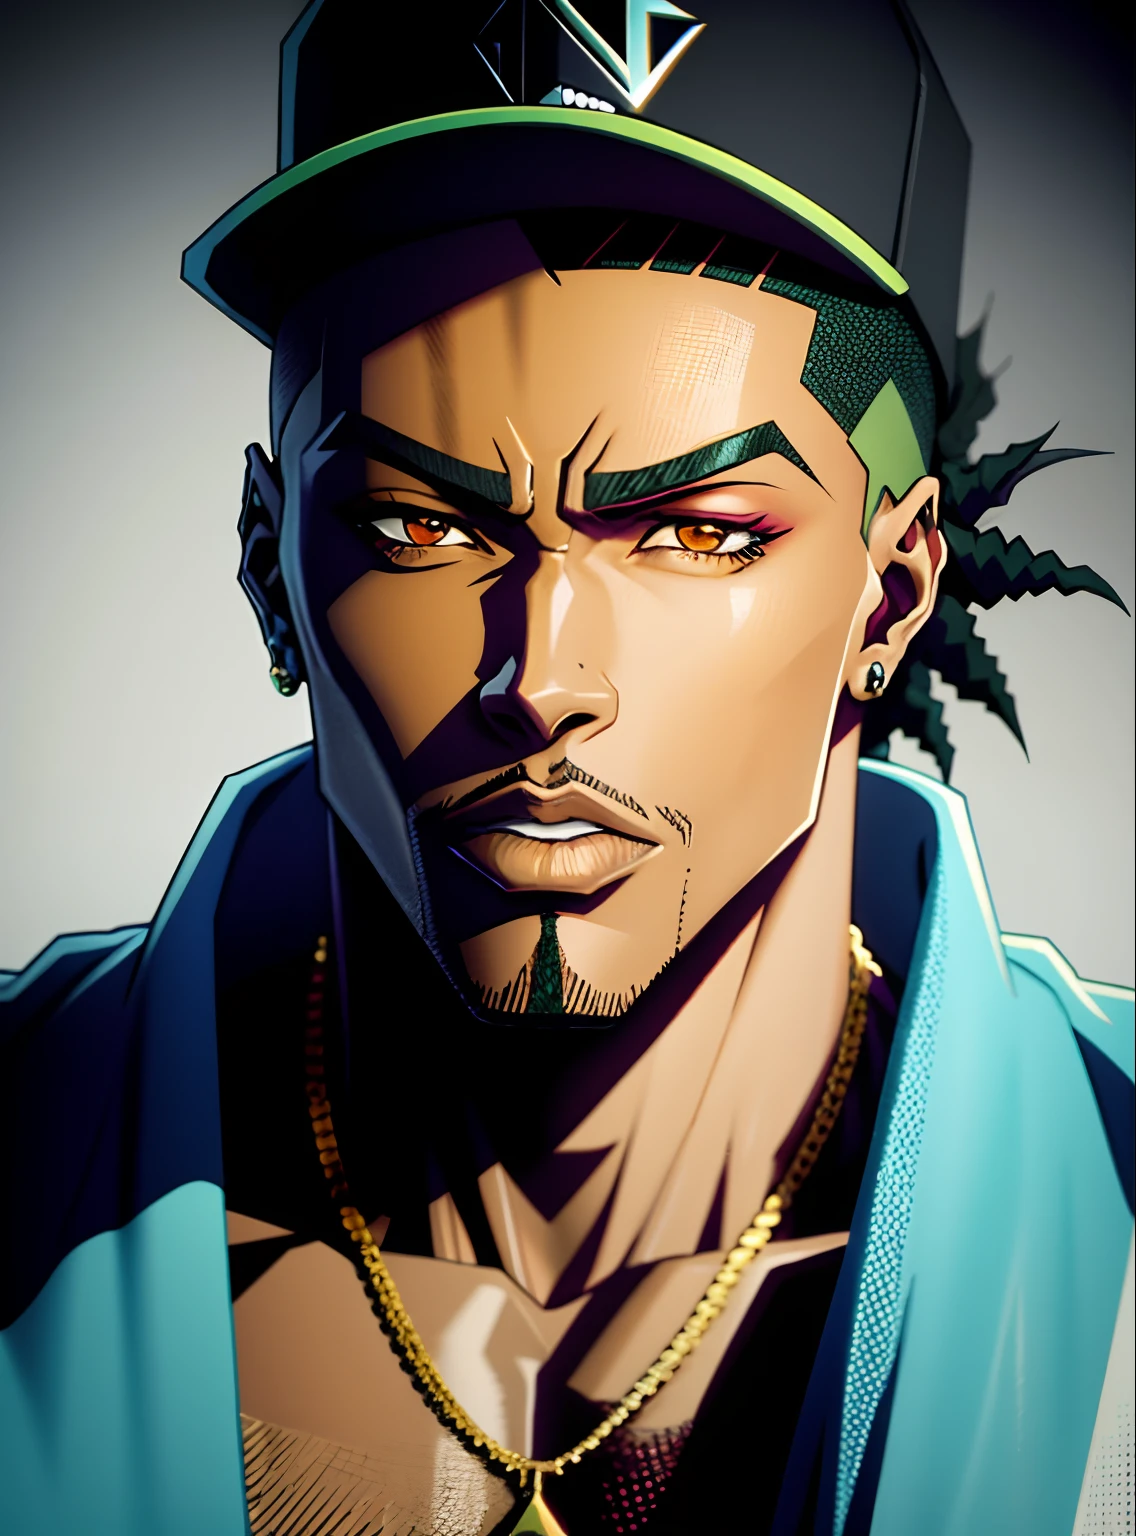 um close up de um personagem de anime, papel de de parede 4k, rapper, Hip Hop, forte, personagem de jogo, anime desenho, roupas de rapper anos 2000, estilo do jogo def jam fight for ny, anime art desenho